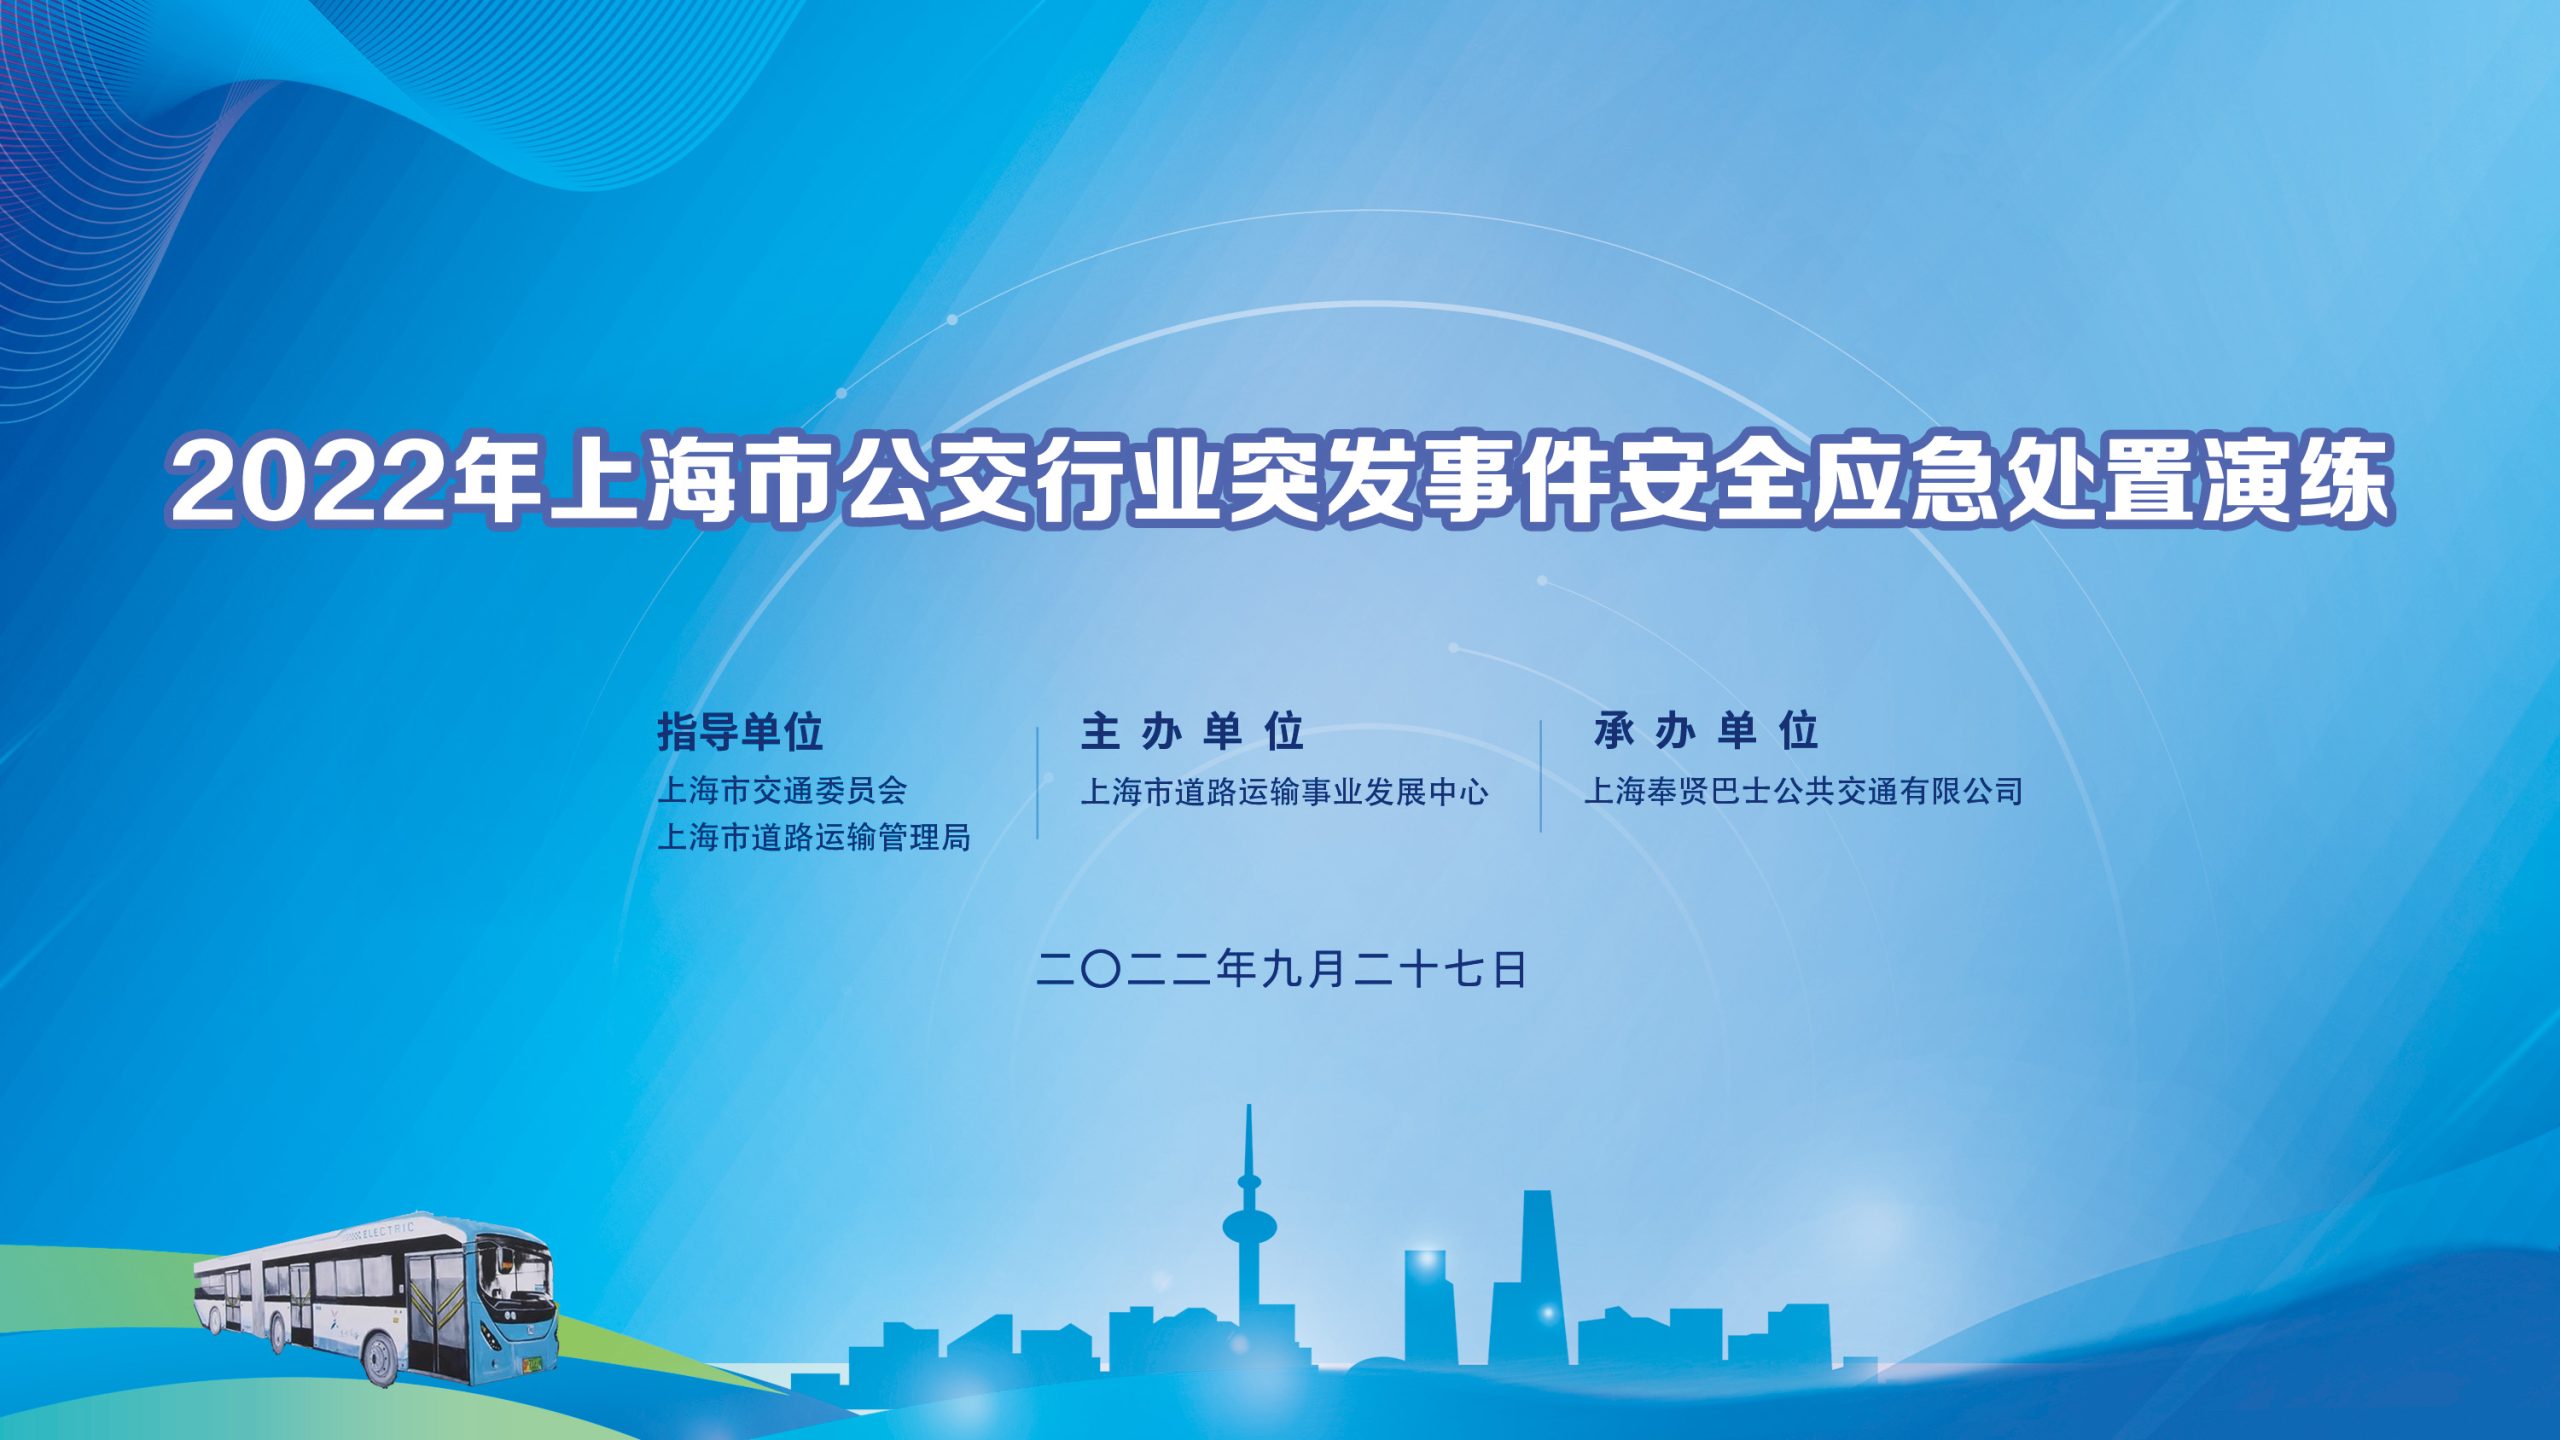 2022年上海市公交行业突发事件安全应急处置演练